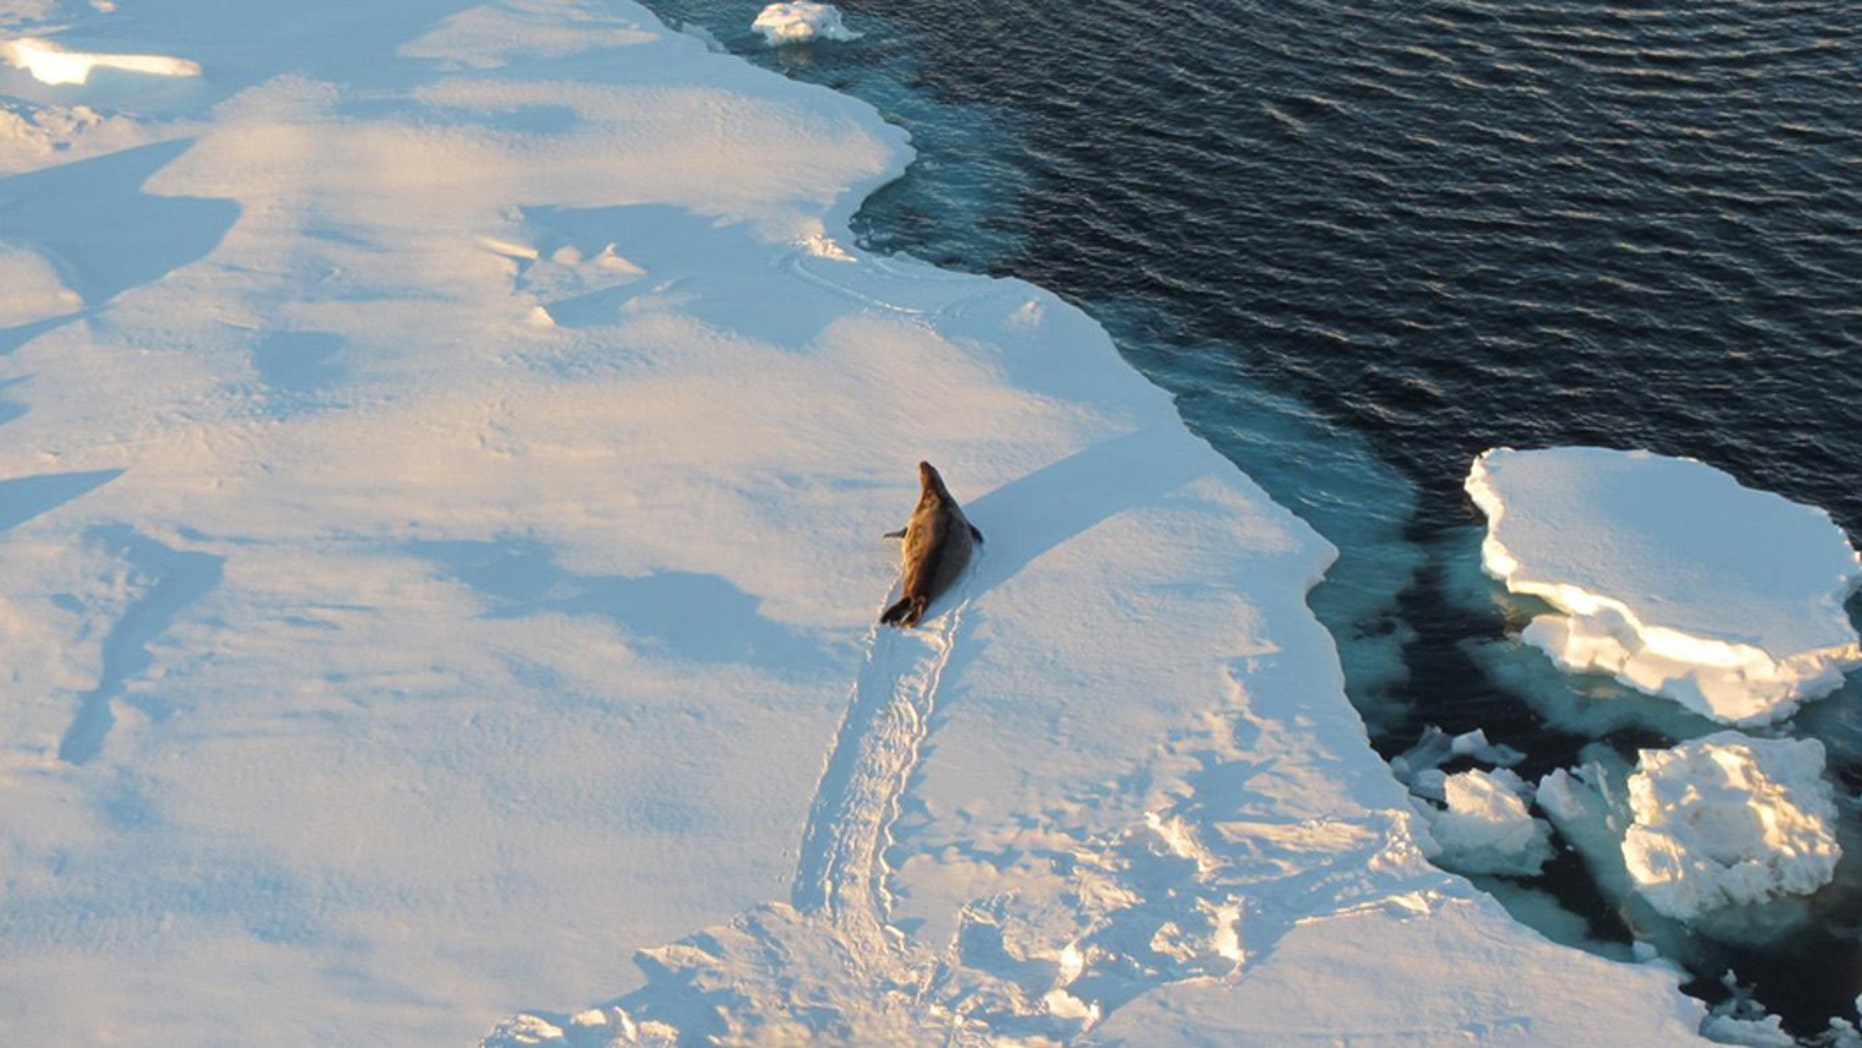 https://a57.foxnews.com/static.foxnews.com/foxnews.com/content/uploads/2019/10/1862/1048/antarctica-ice-age.jpg?ve=1&tl=1